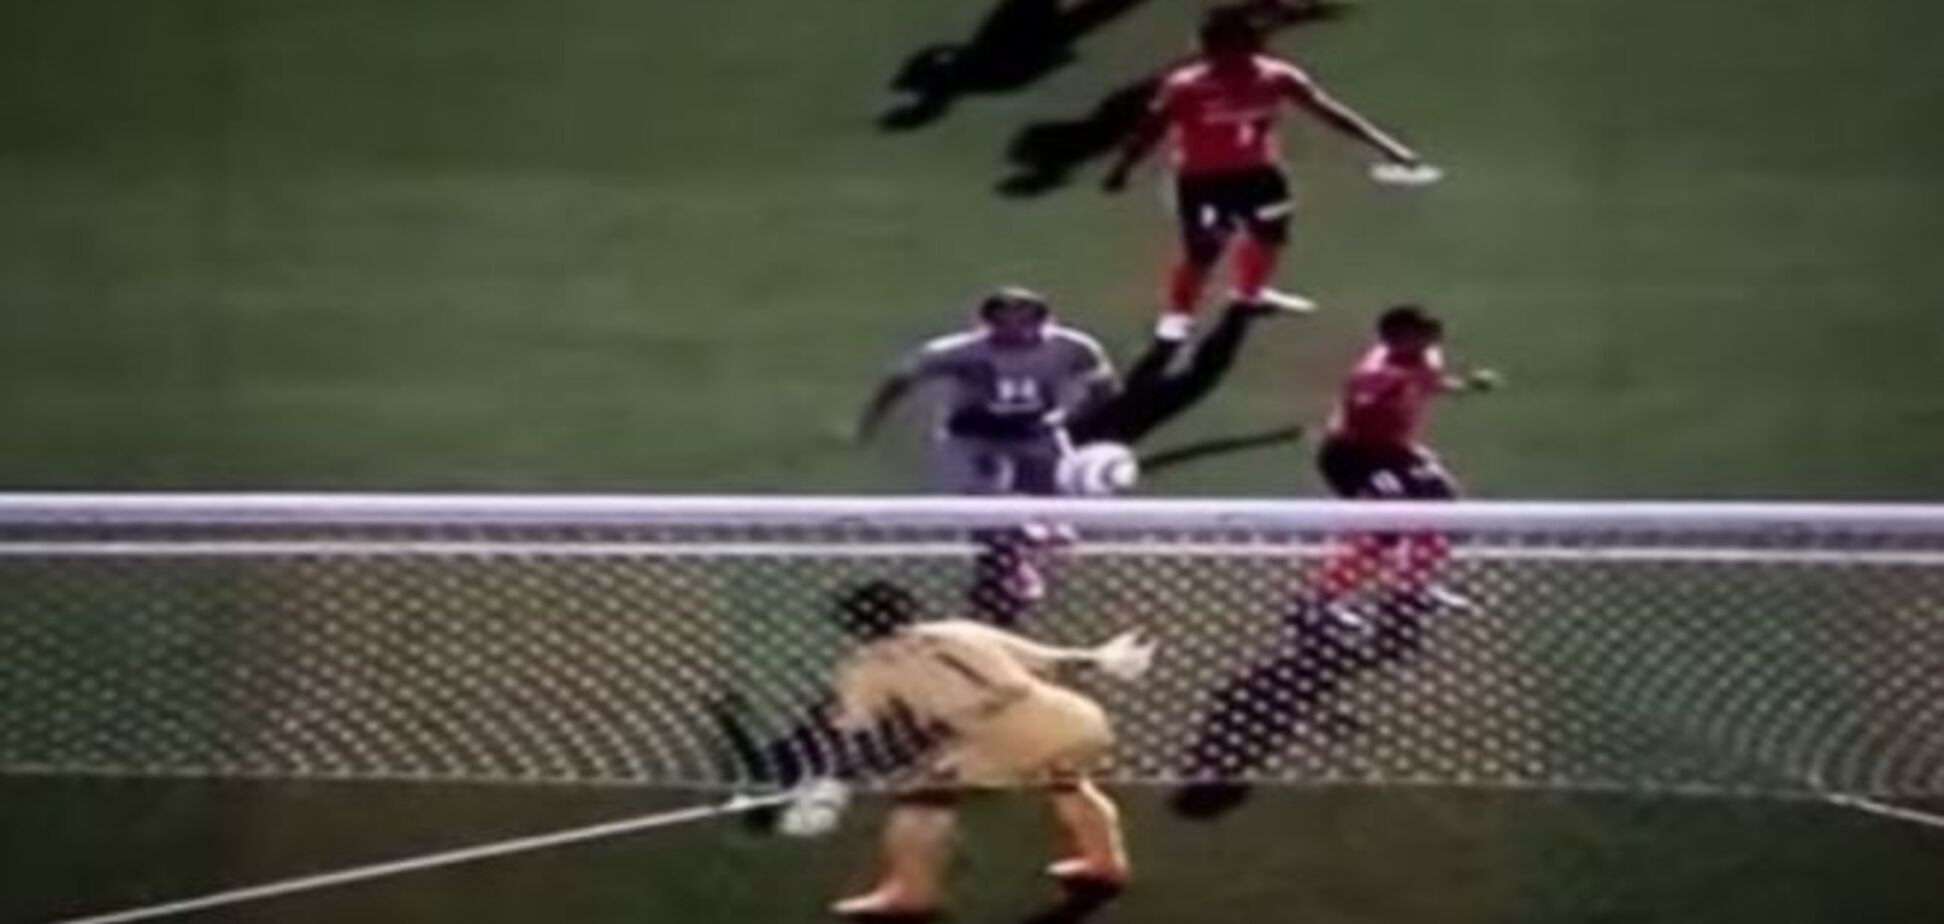 Ниндзя! Японский вратарь отбил мяч невероятным образом: видео сэйва